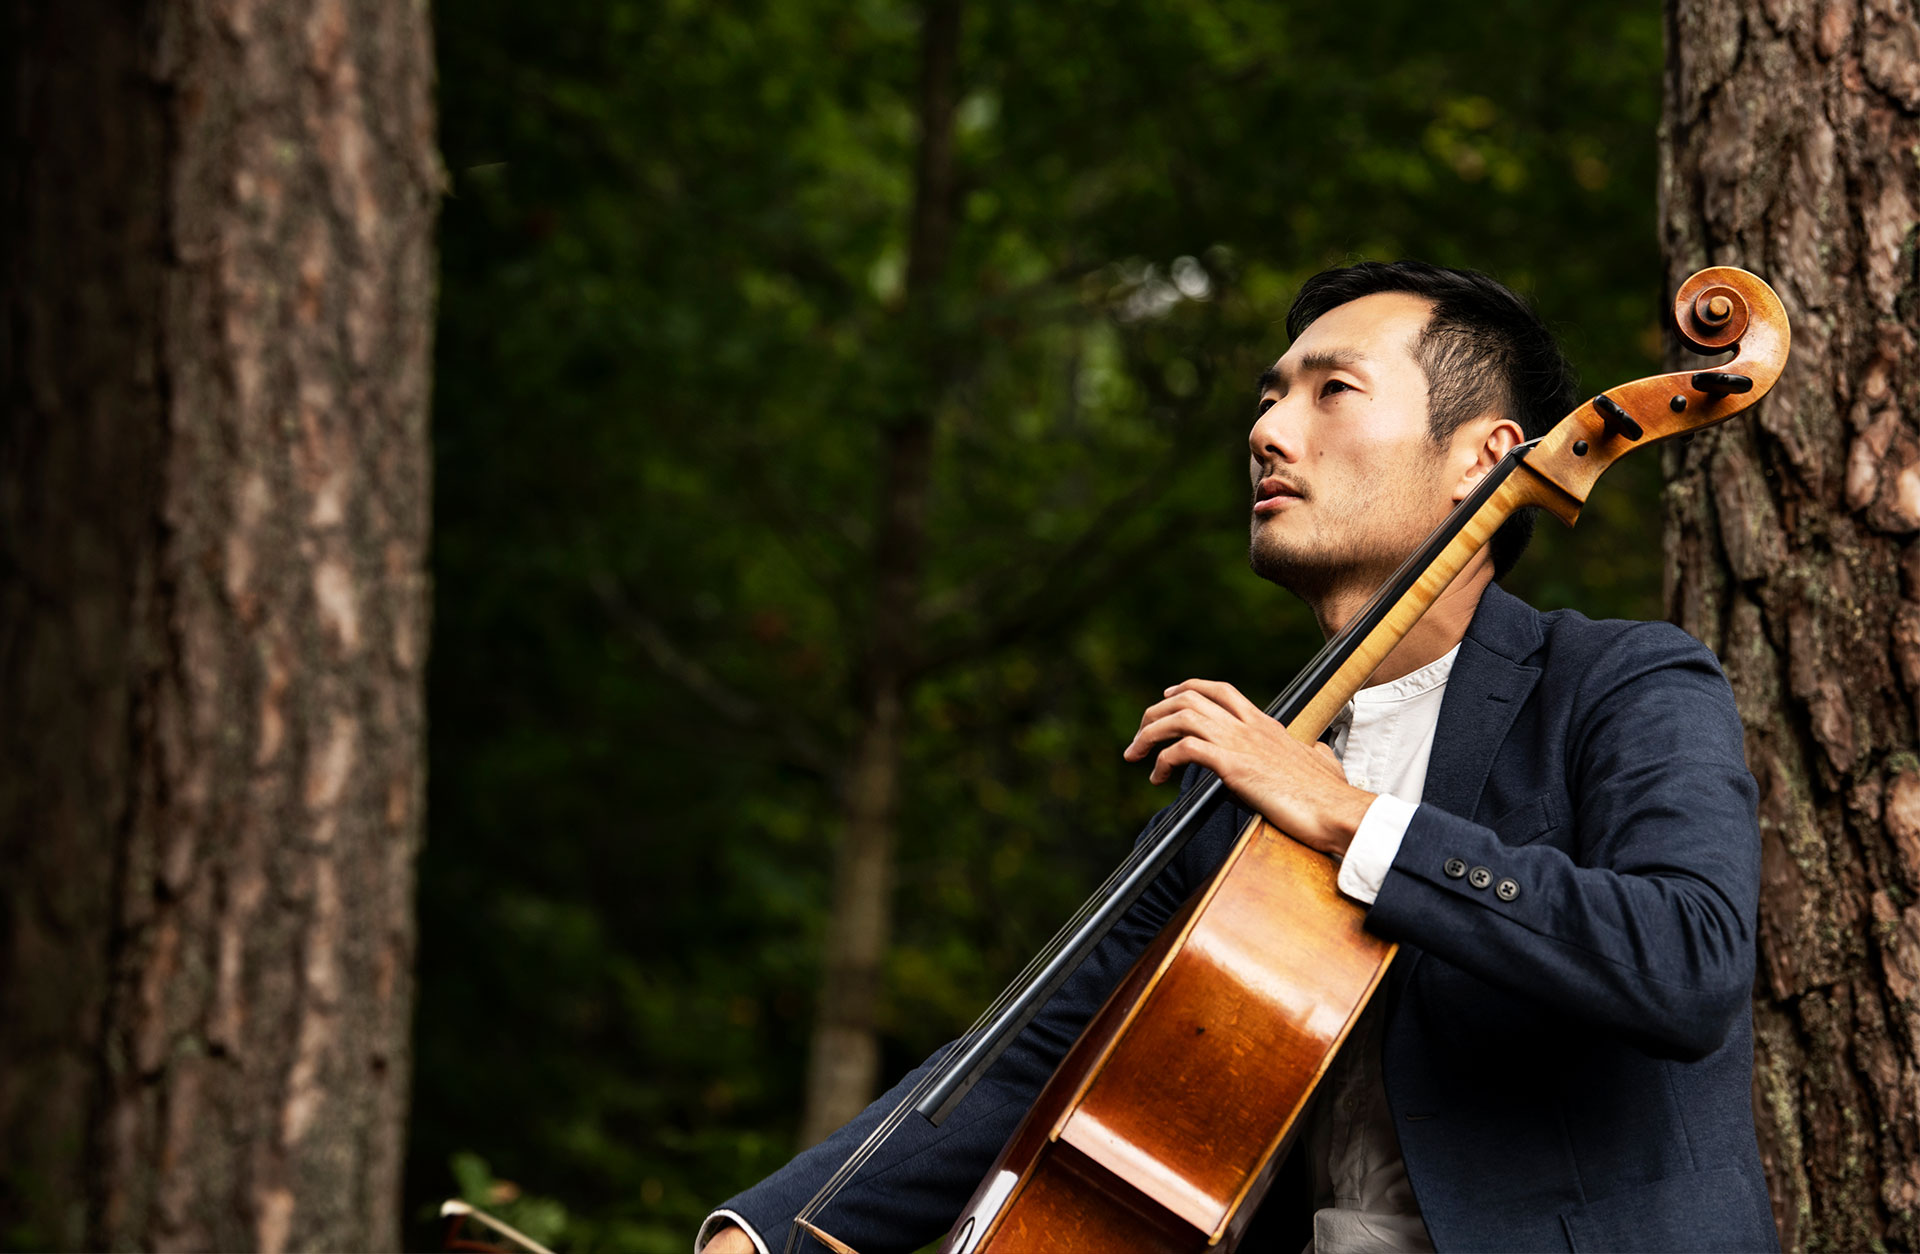 Jun Sasaki sitter utomhus i skogen och spelar på sin cello.